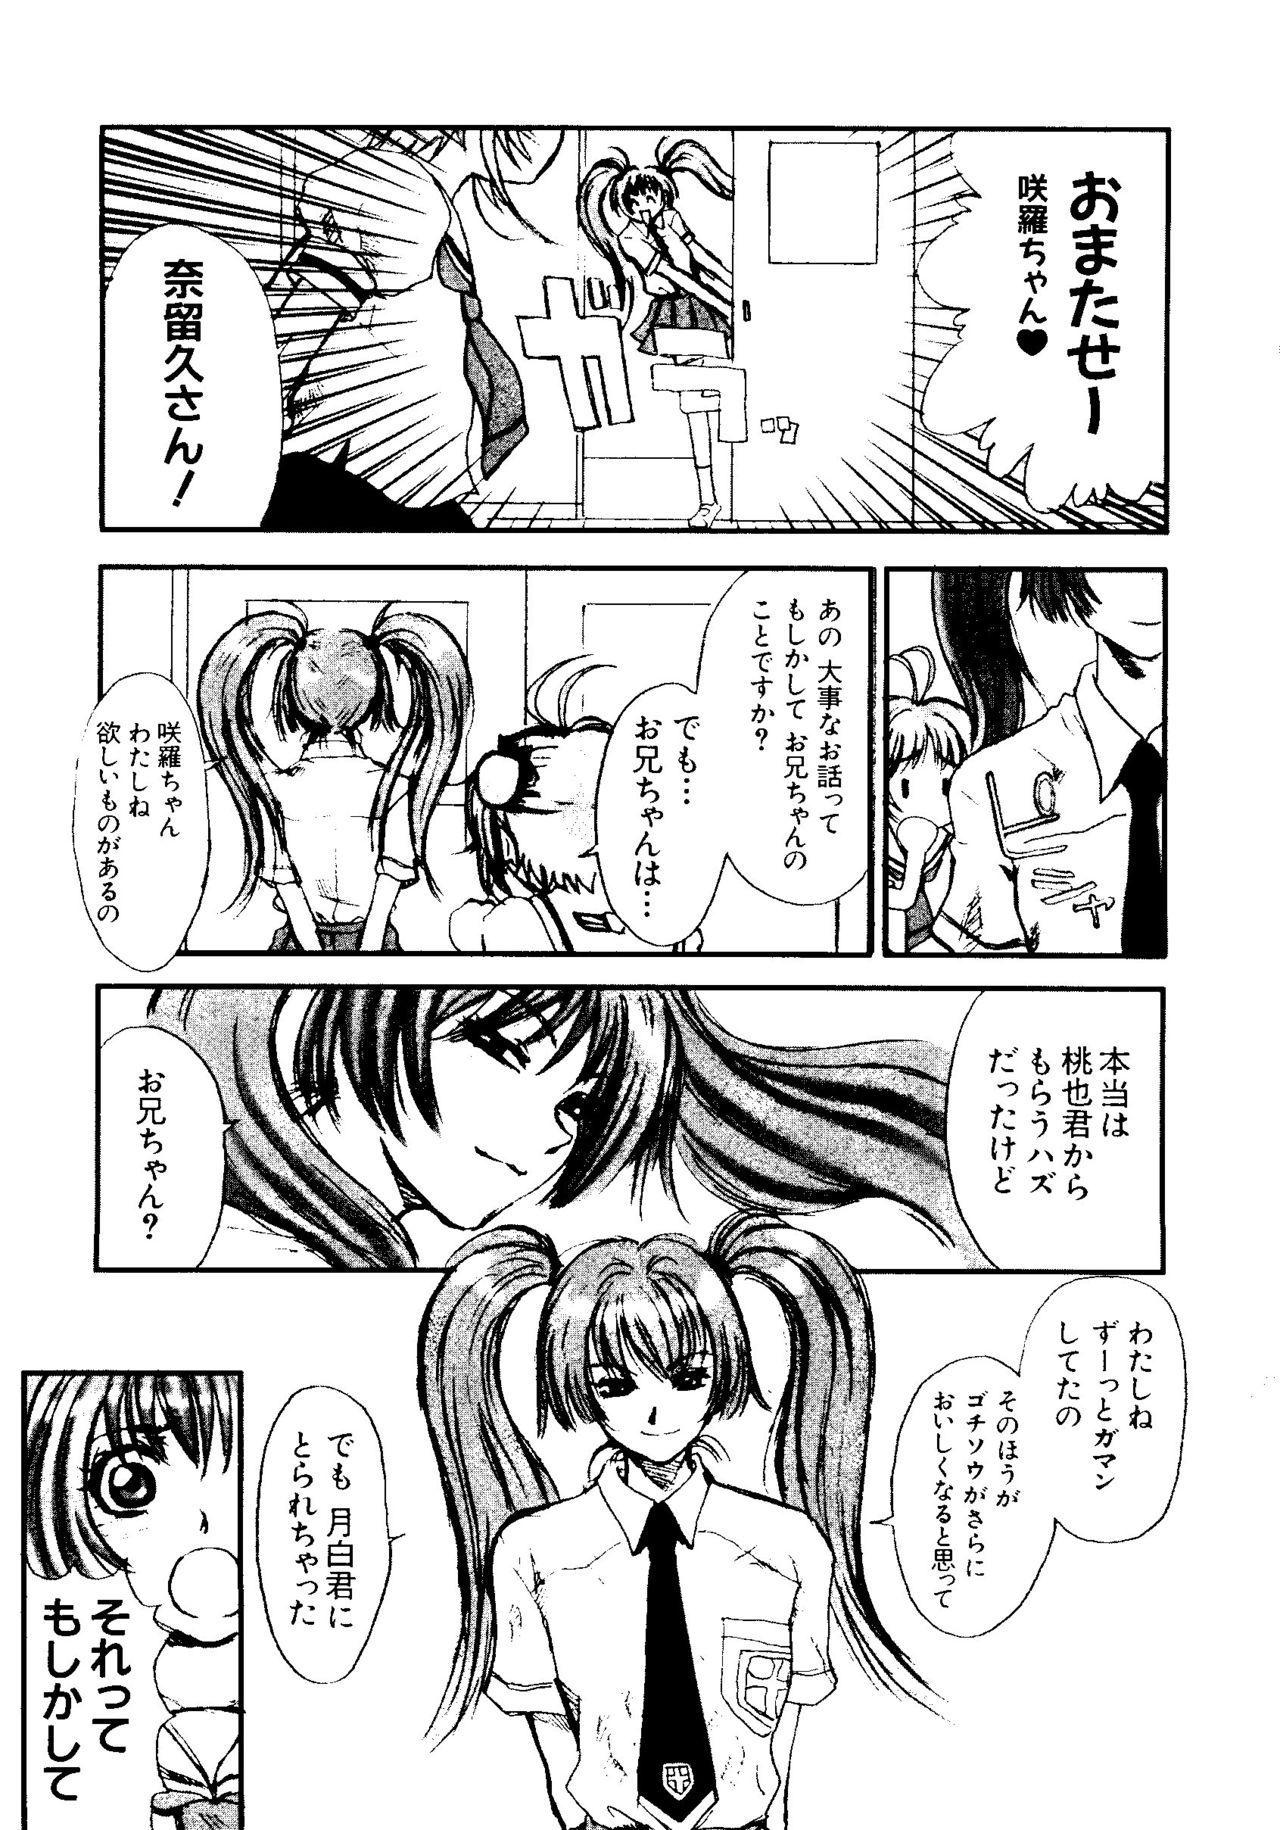 Humiliation Pov Love Chara Taizen No. 5 - Cardcaptor sakura Ojamajo doremi Digimon adventure Ecoko Azuki-chan Rola - Page 8